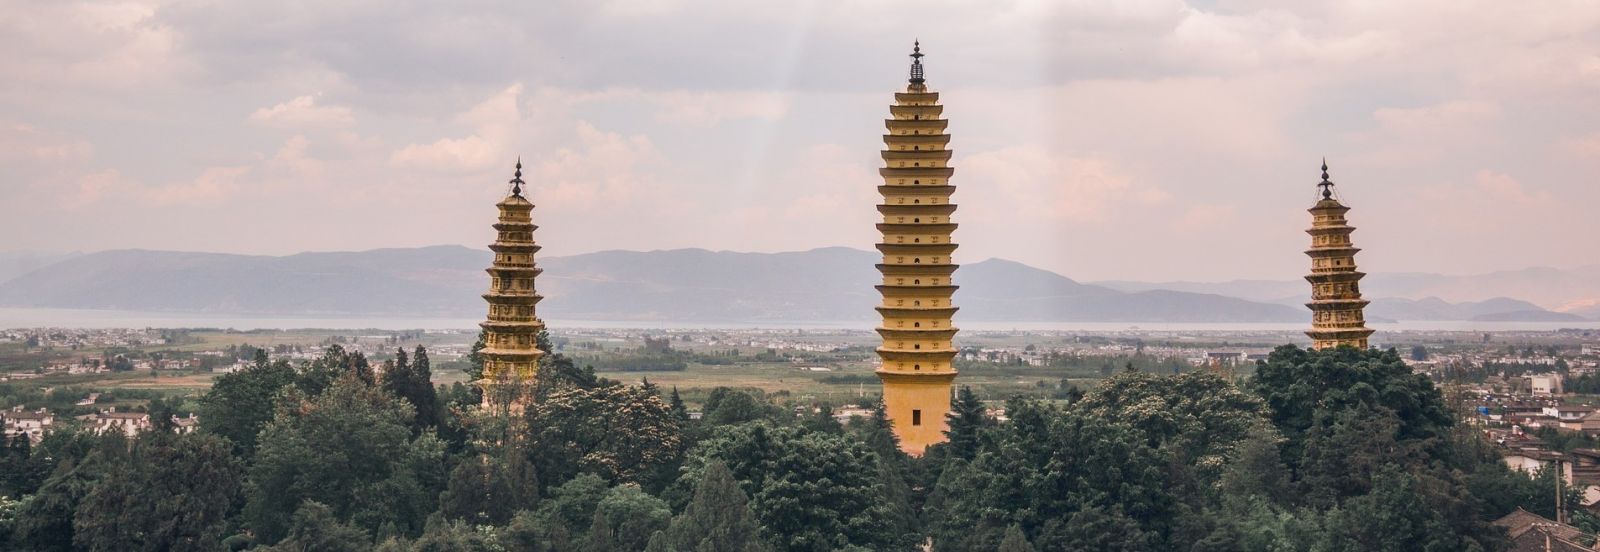 Pagodas in Dali